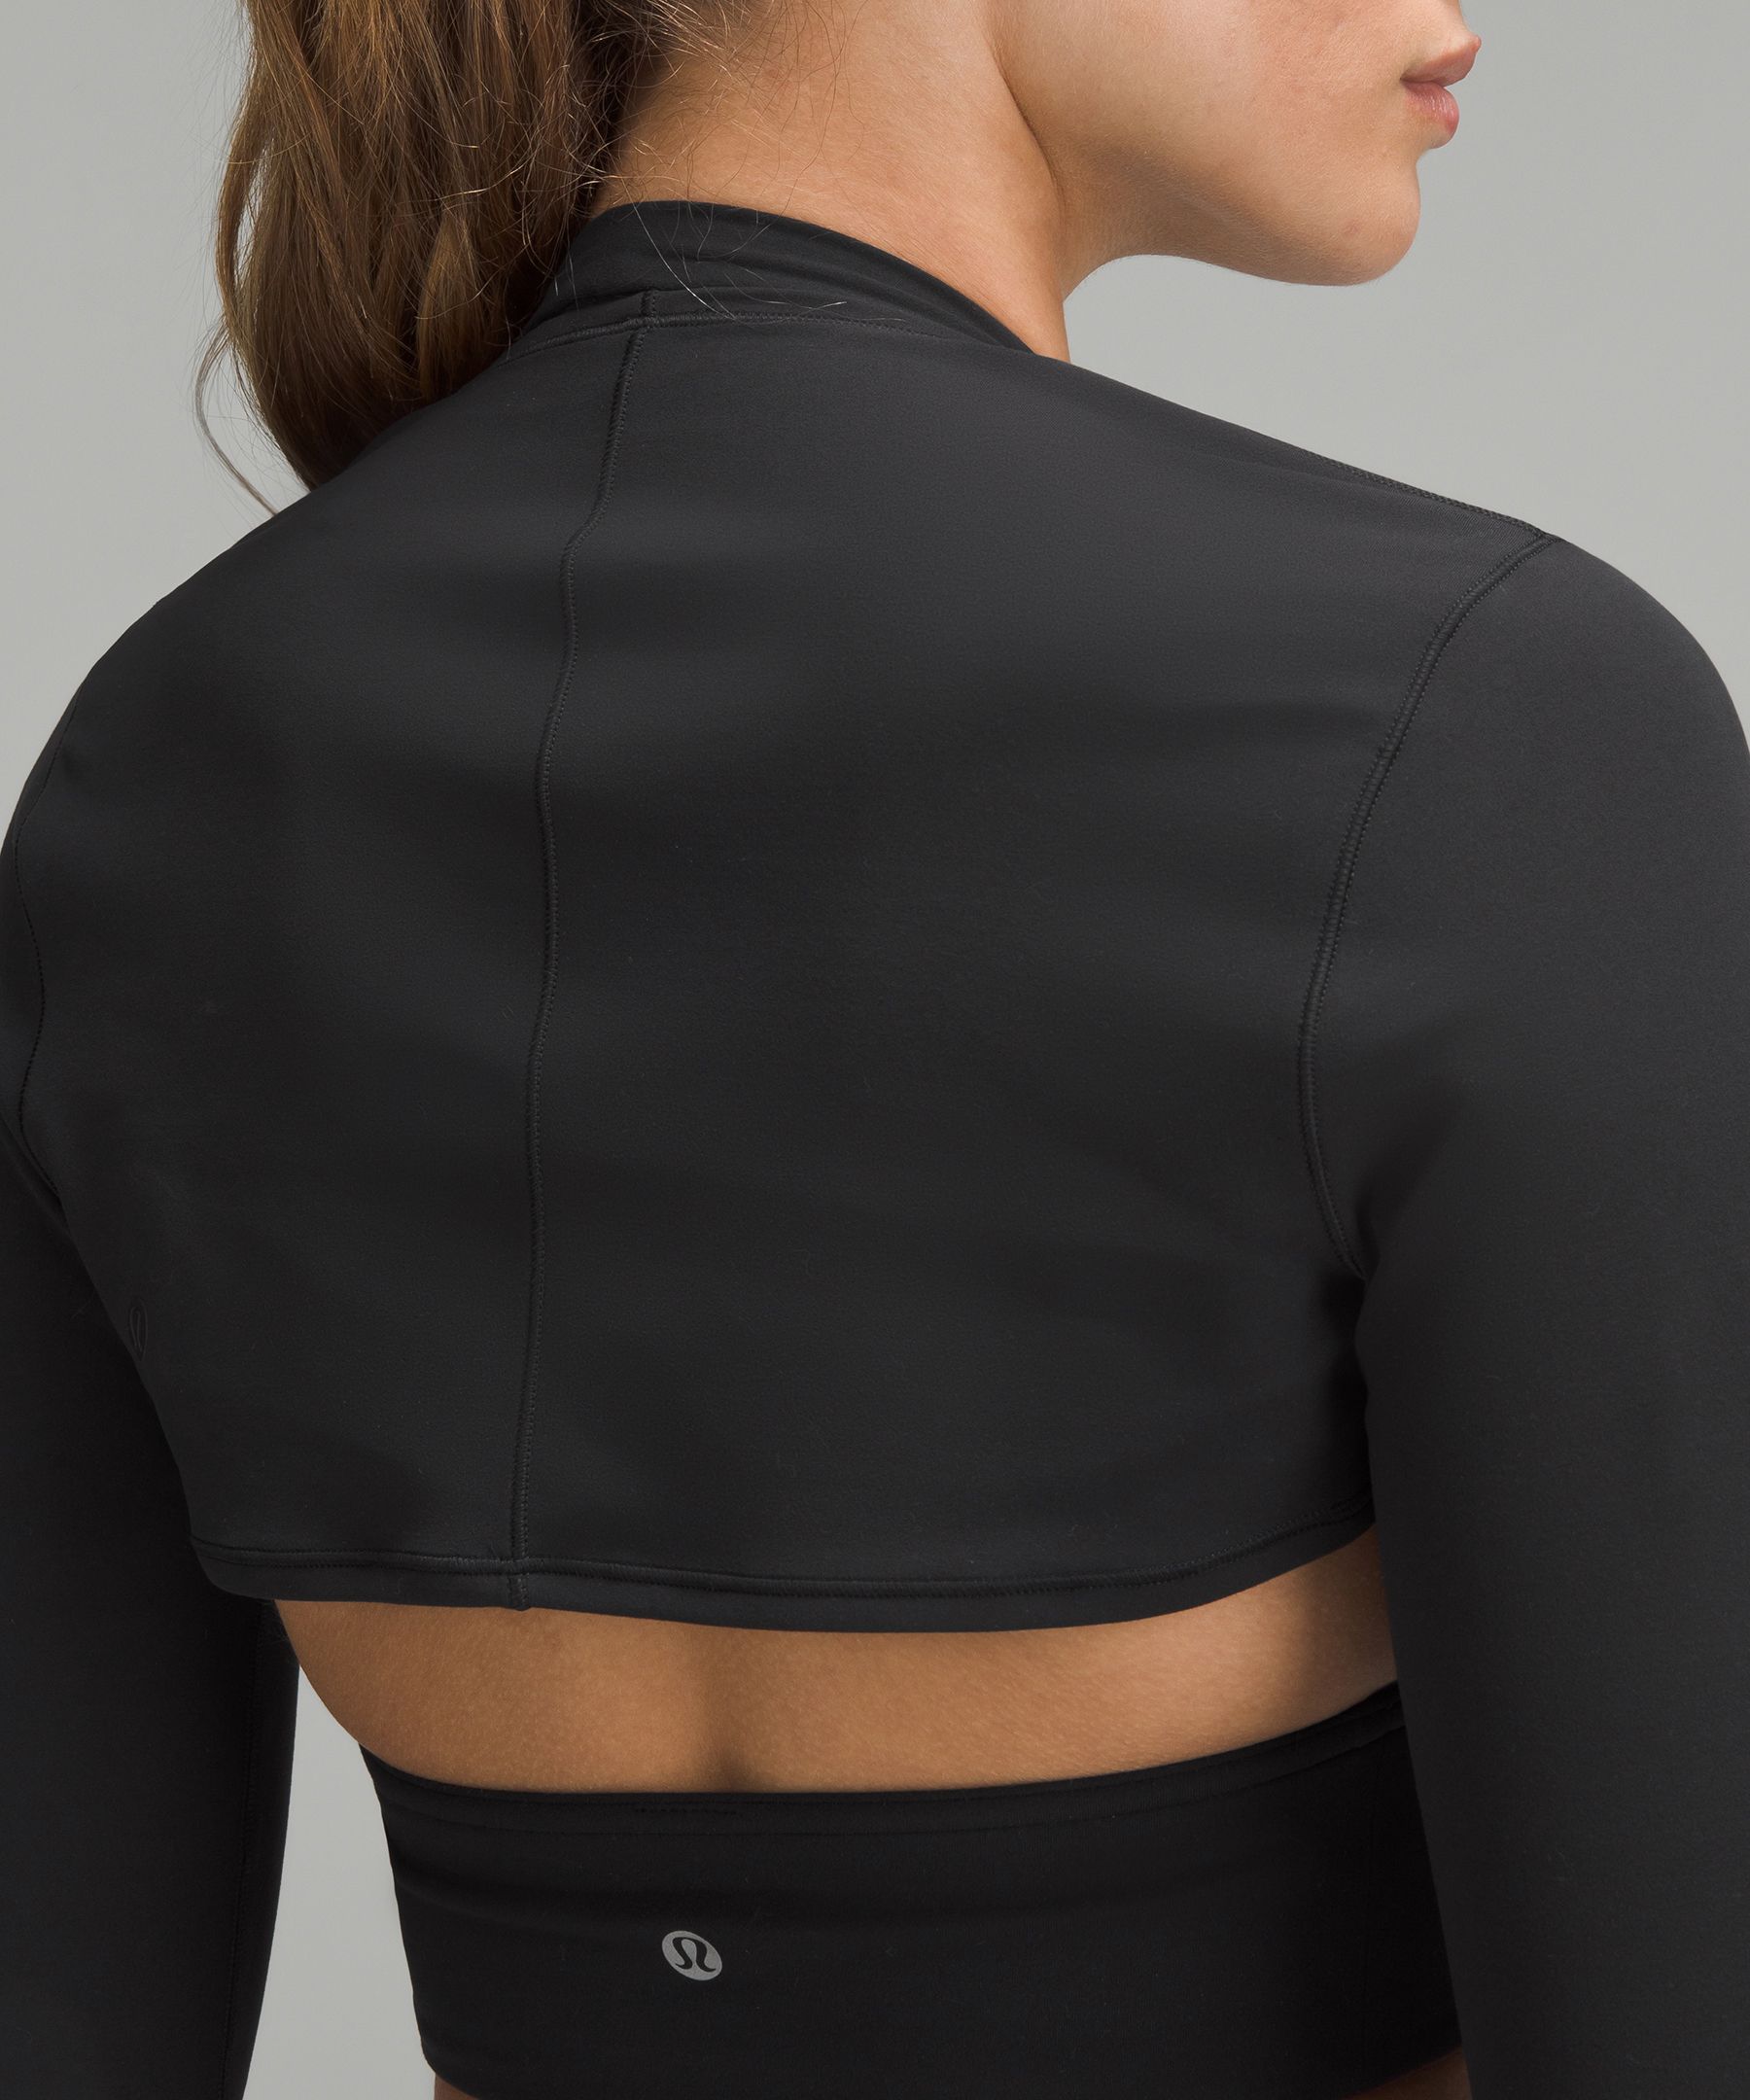 Nulu Long-Sleeve Yoga Shrug | Women's Hoodies & Sweatshirts